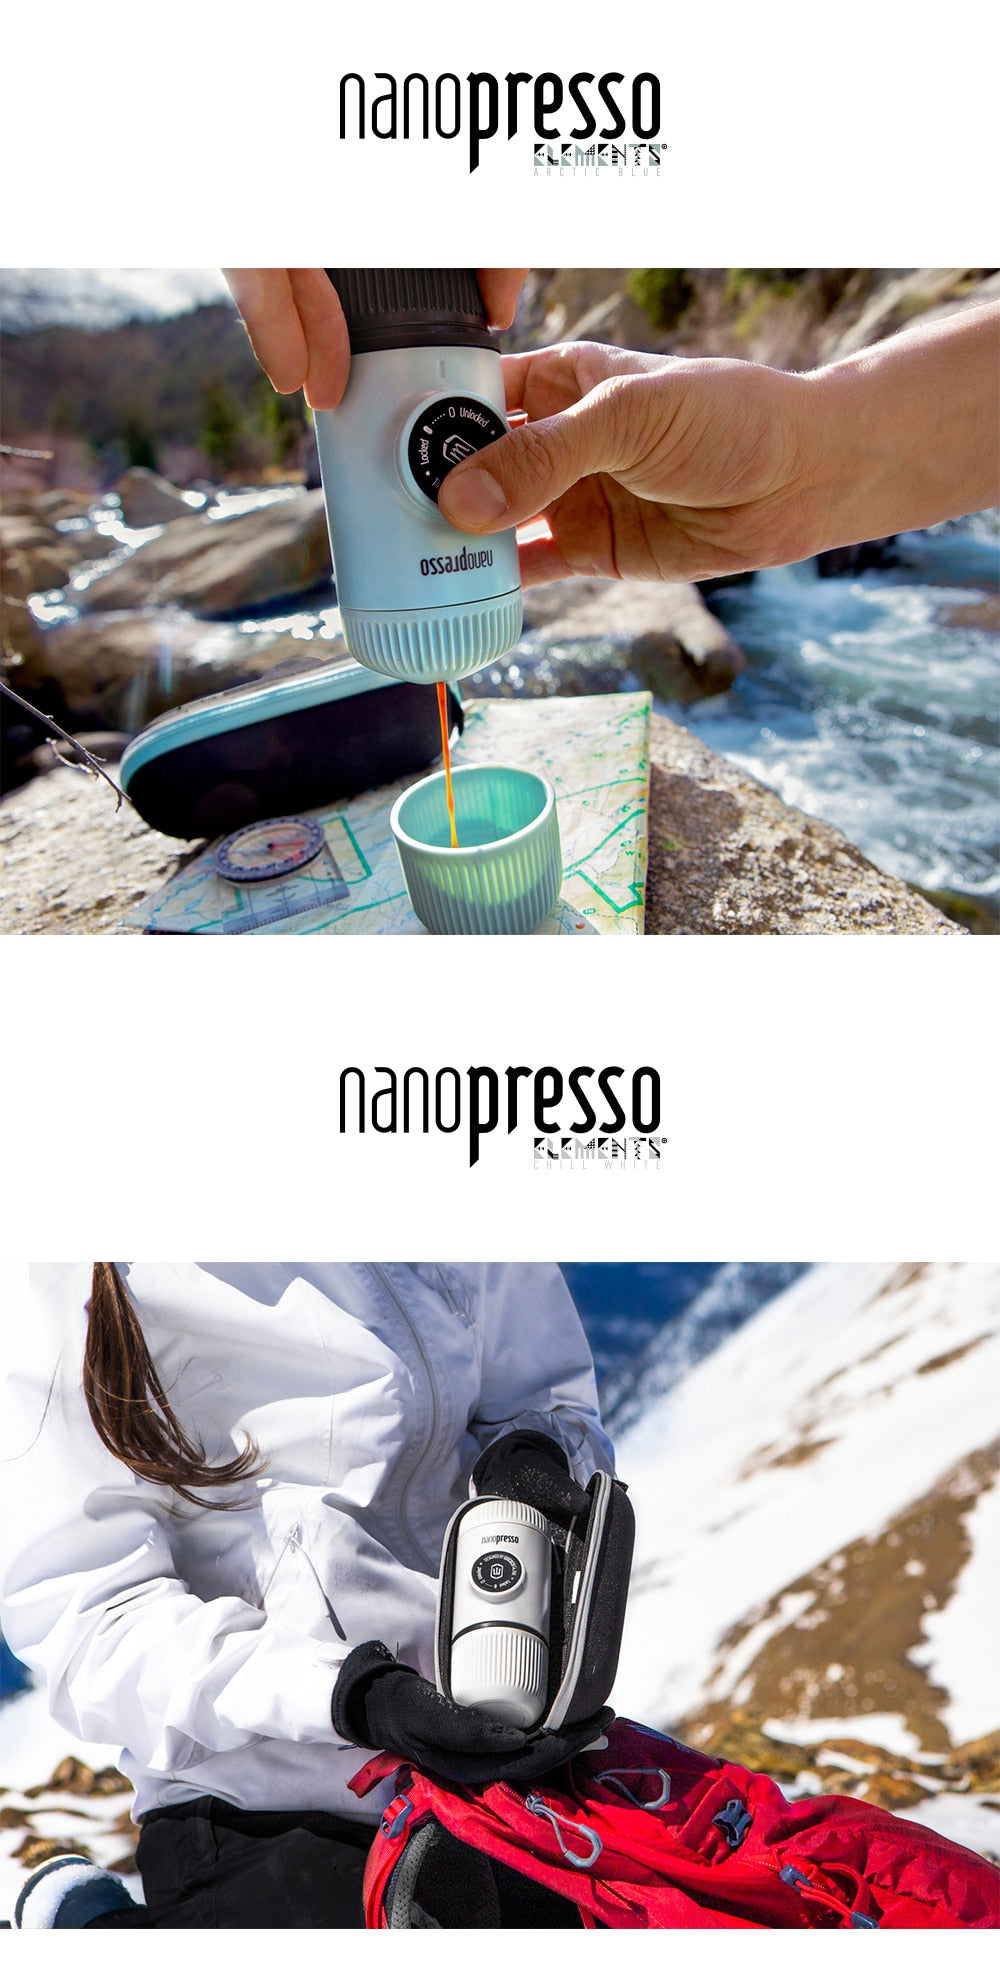 Nanopresso Portable Espresso Coffee Maker and Case, 18 Bar Pressure.